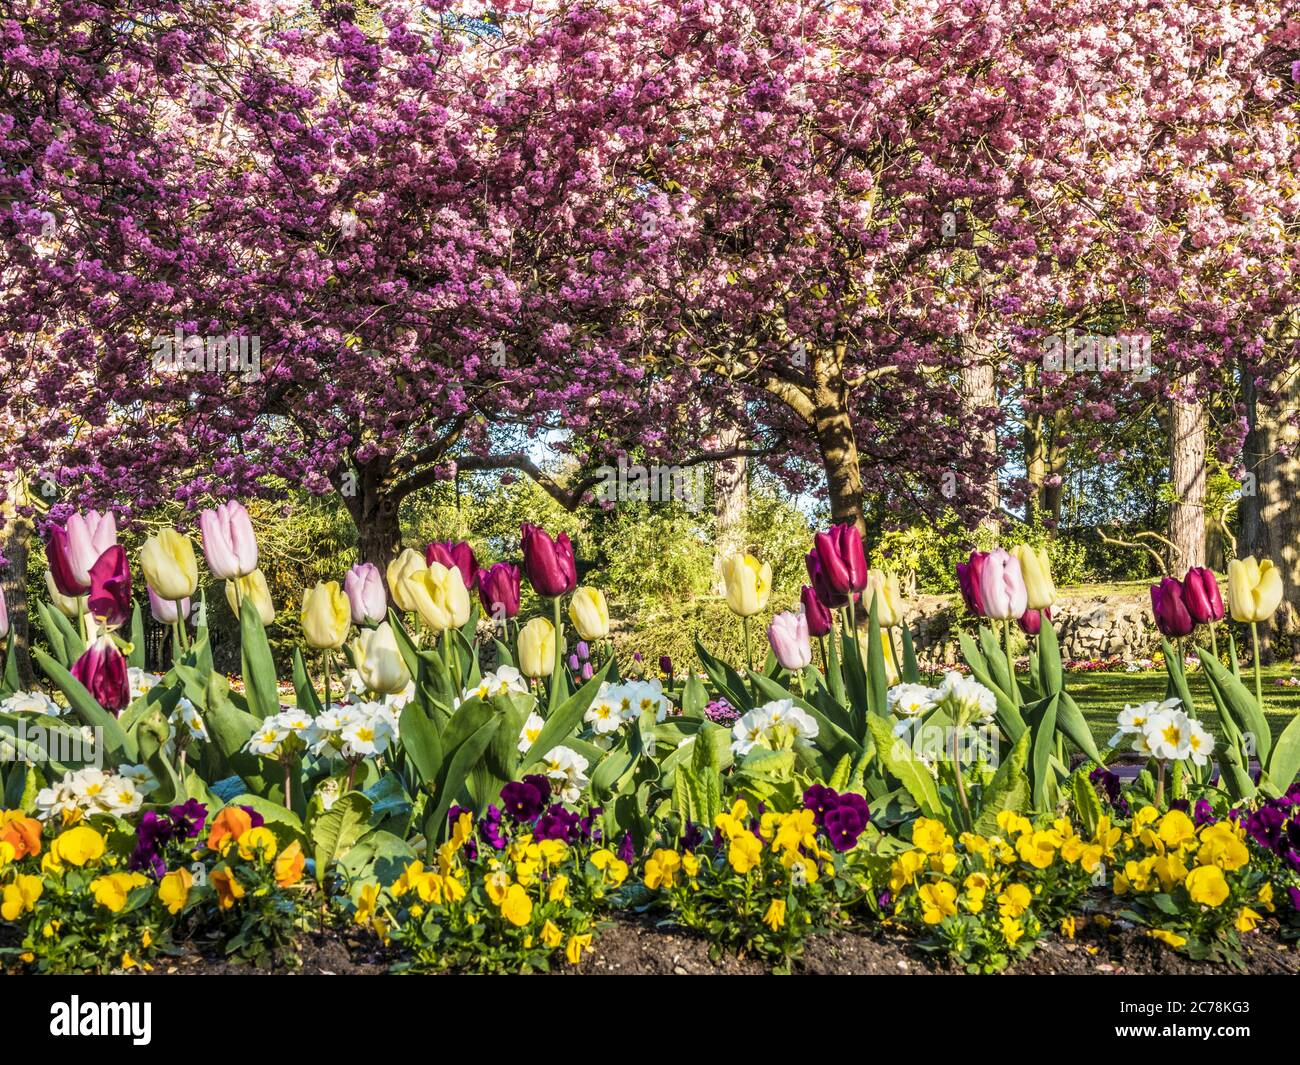 Lit de tulipes, de primuls blancs et de pansies avec des cerisiers en fleurs roses en fleur en arrière-plan dans un parc public urbain en Angleterre. Banque D'Images